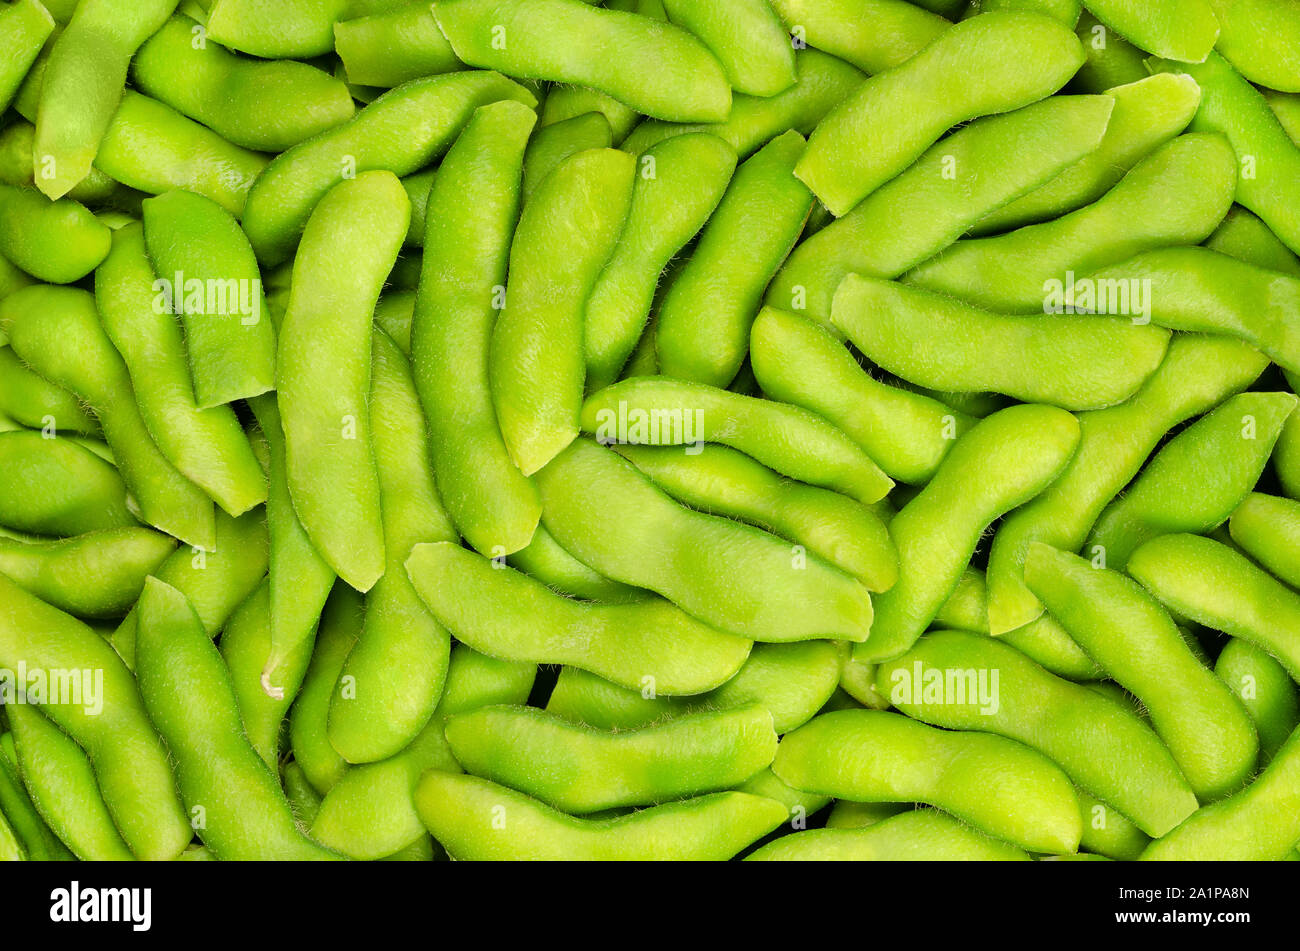 Edamame, grüne Sojabohnen in den Pod, Hintergrund. Unreife Sojabohnen, auch Maodou. Glycine max, ein Legumen, essbare nach dem Kochen und eine reiche Proteinquelle. Stockfoto